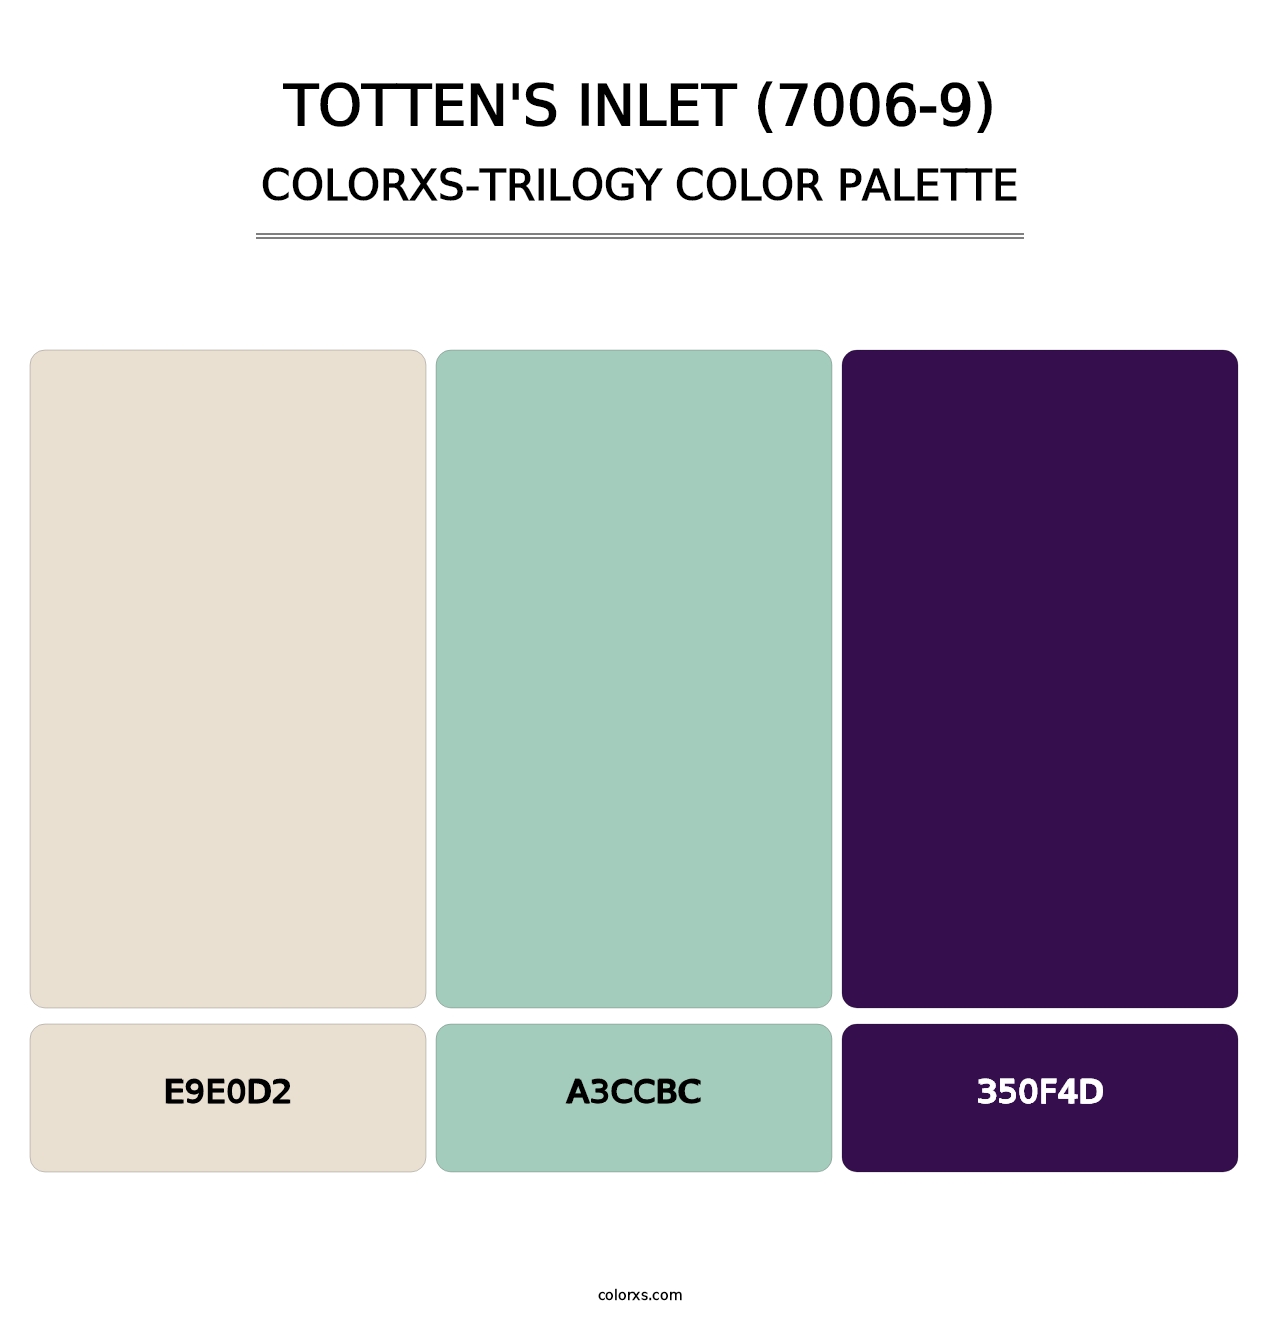 Totten's Inlet (7006-9) - Colorxs Trilogy Palette